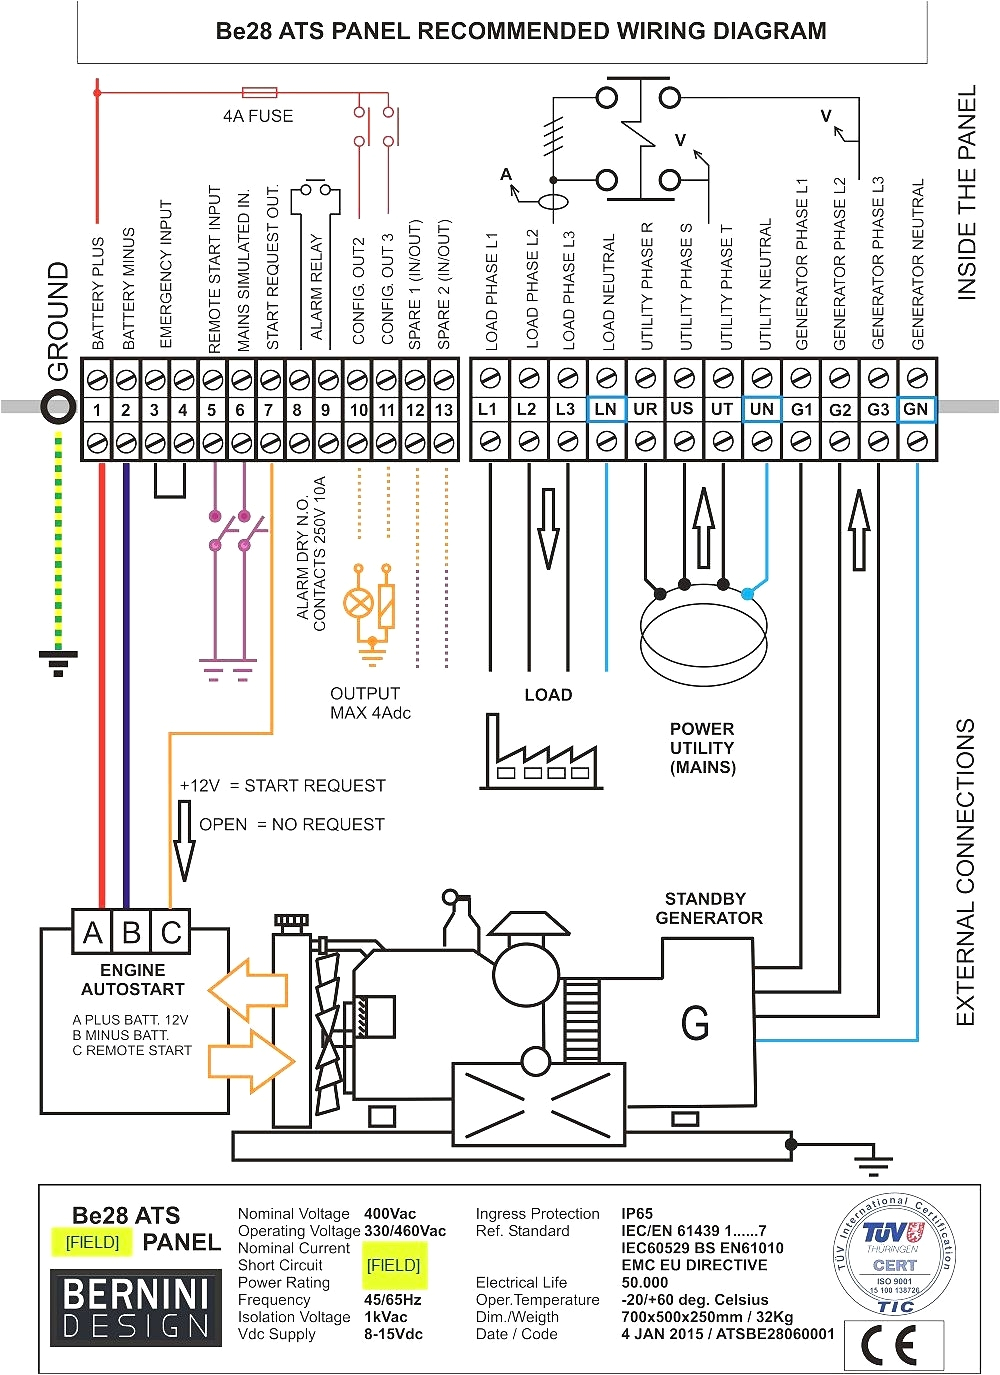 generac generator wiring diagram generac ats wiring diagram download generac generator wiring diagram 9 a download wiring diagram 6d jpg